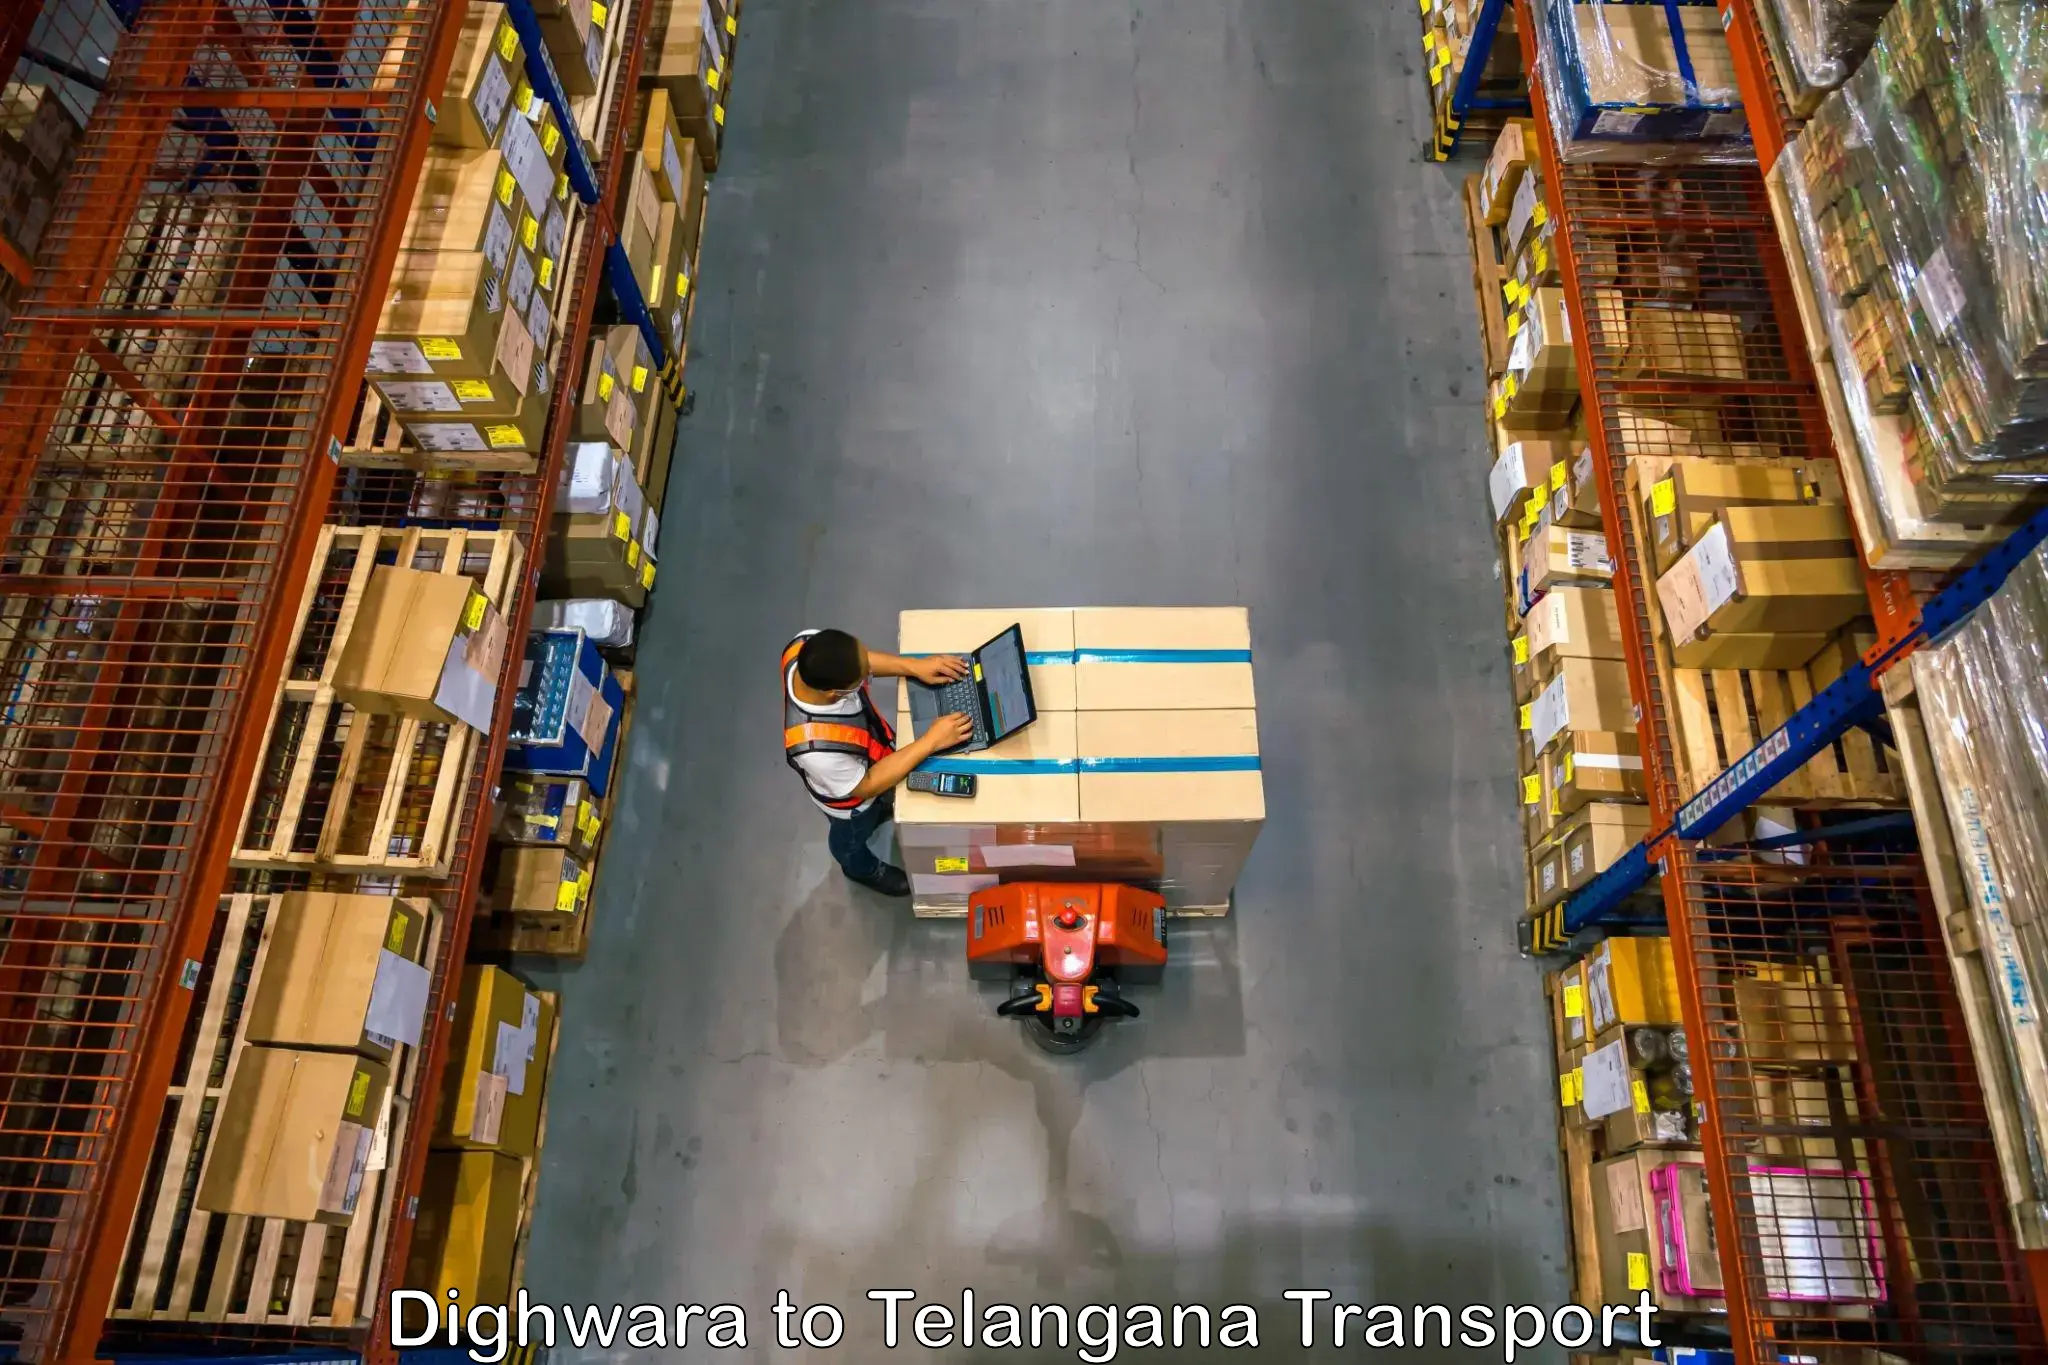 Delivery service Dighwara to Balanagar